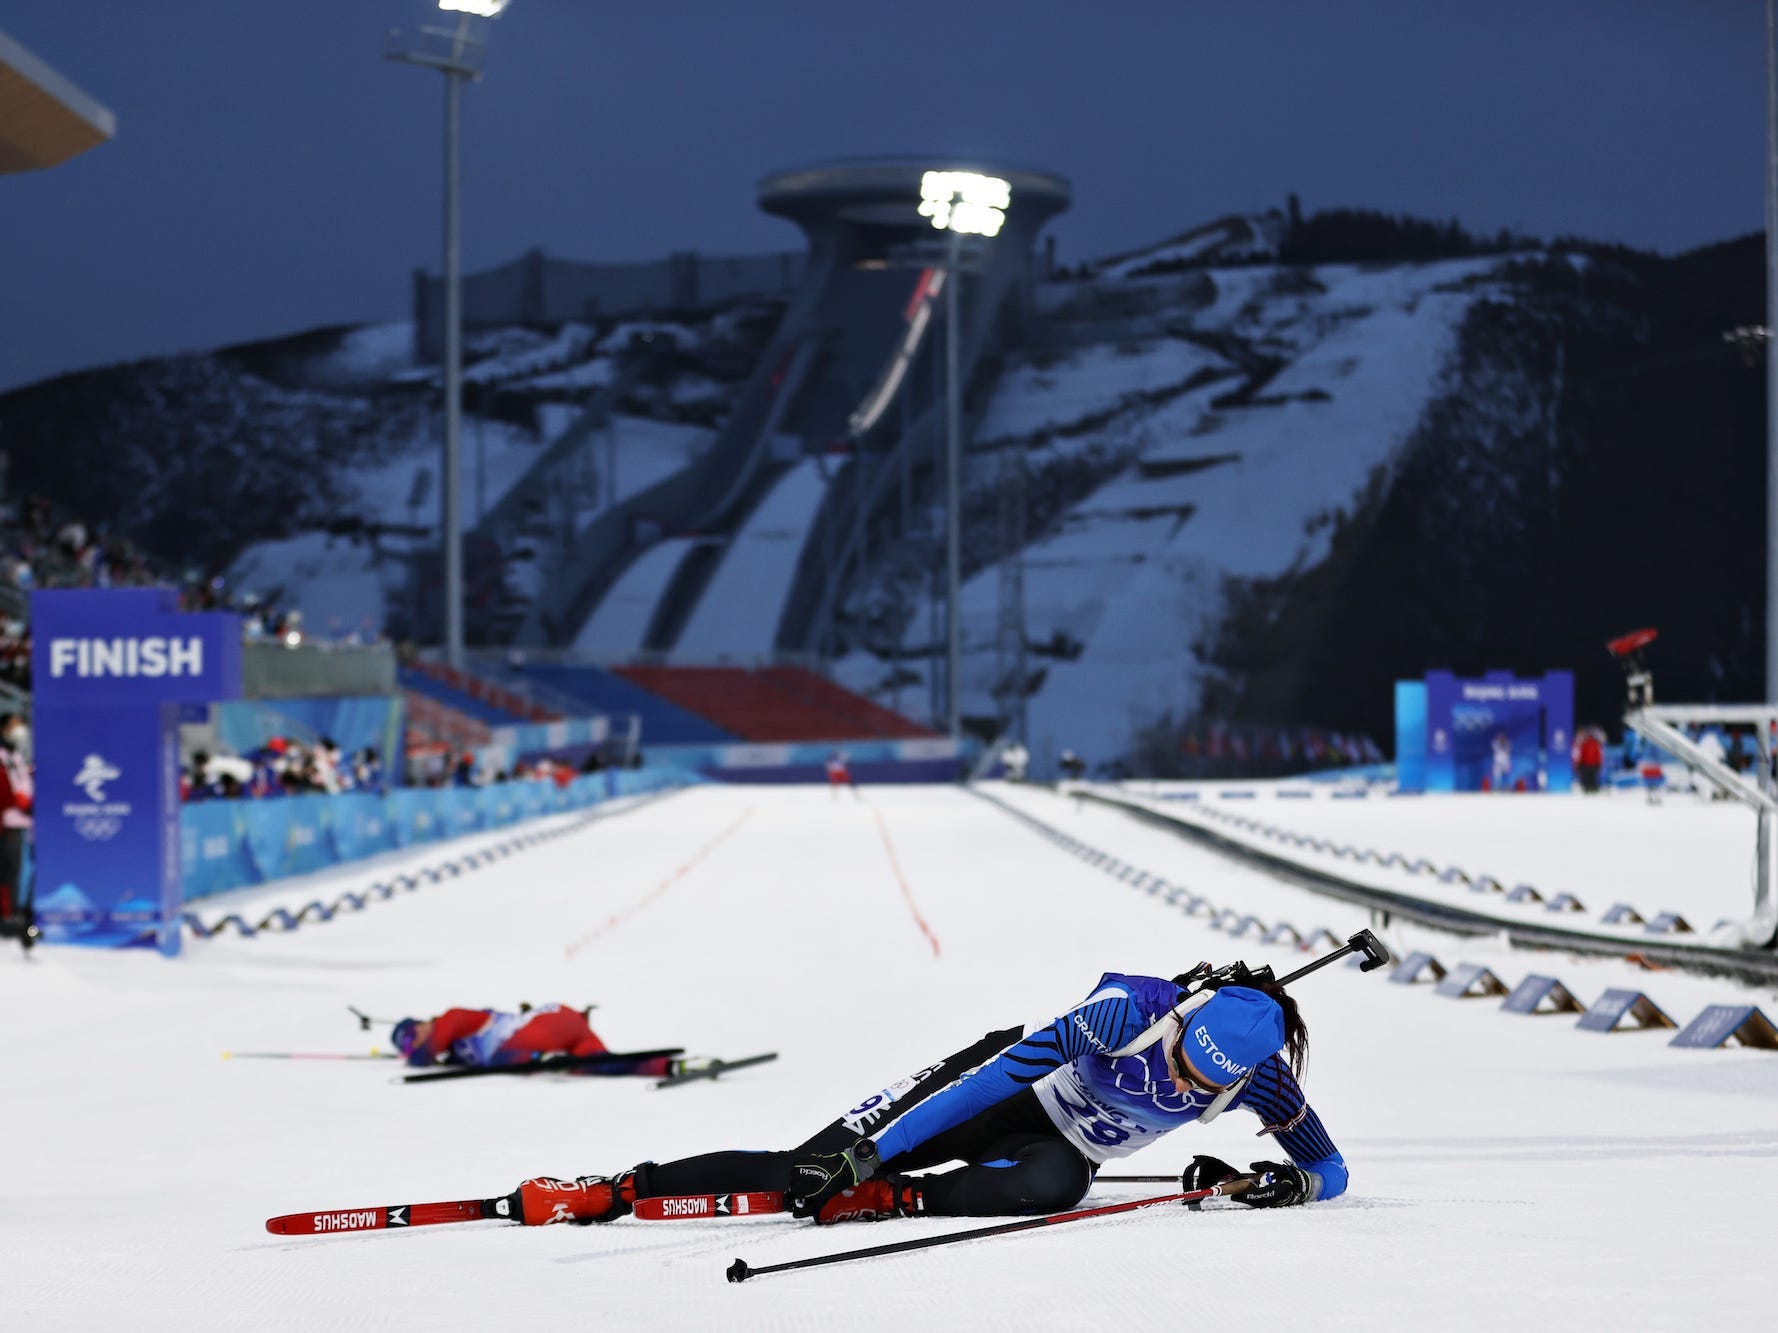 Tuuli Tomingas vom Team Estland bricht über die Ziellinie zusammen, als eine andere Skifahrerin im 7,5-km-Sprint hinter ihr liegt.